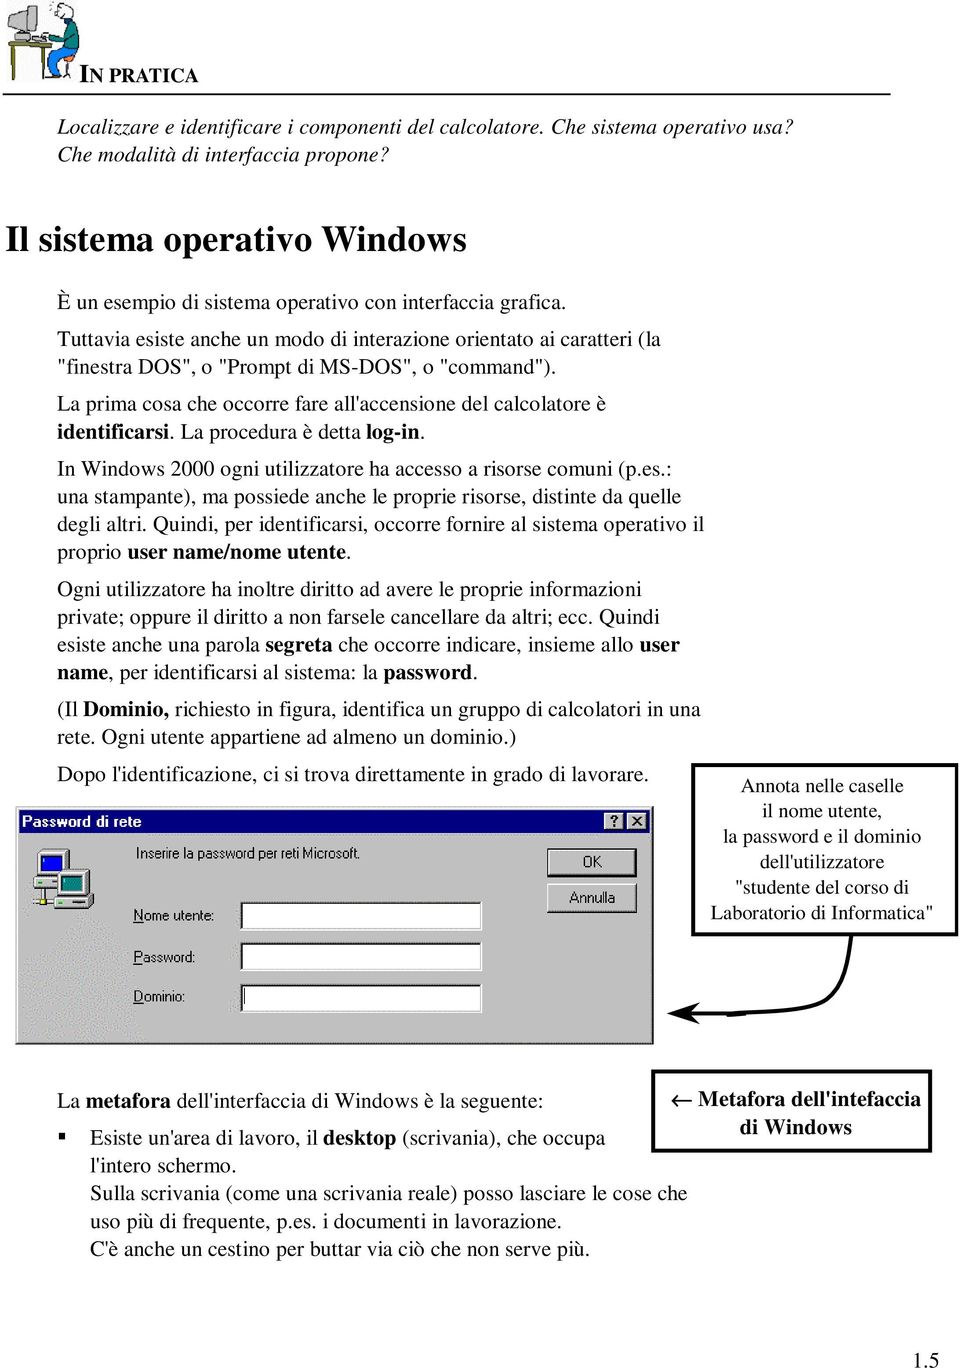 Tuttavia esiste anche un modo di interazione orientato ai caratteri (la "finestra DOS", o "Prompt di MS-DOS", o "command").